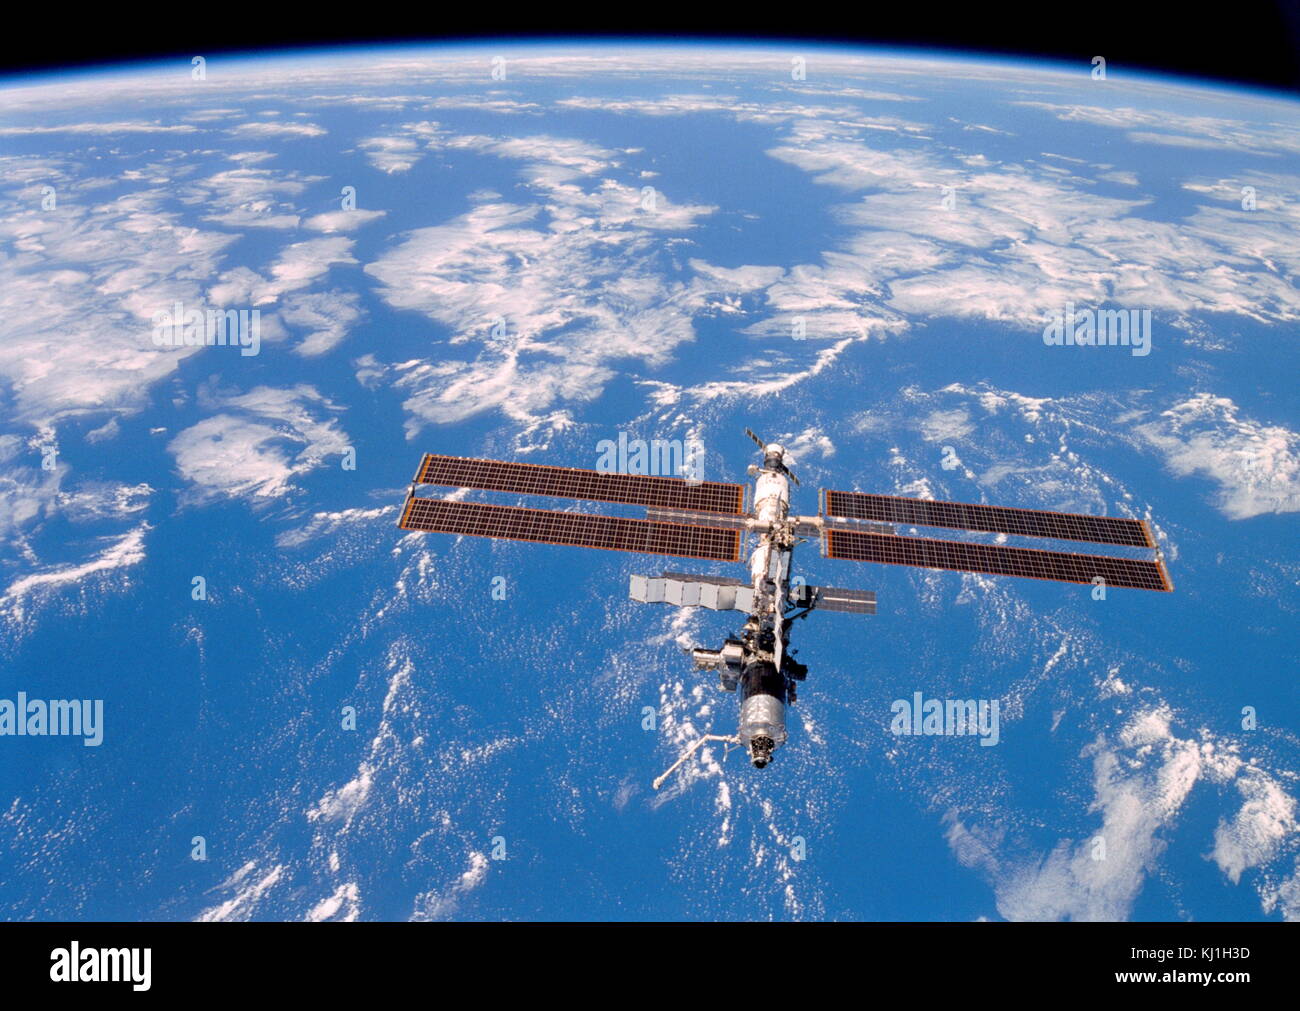 La Station spatiale internationale photographiée par les membres d'équipage de la navette spatiale Discovery après déconnexion le 20 août 2001 Banque D'Images